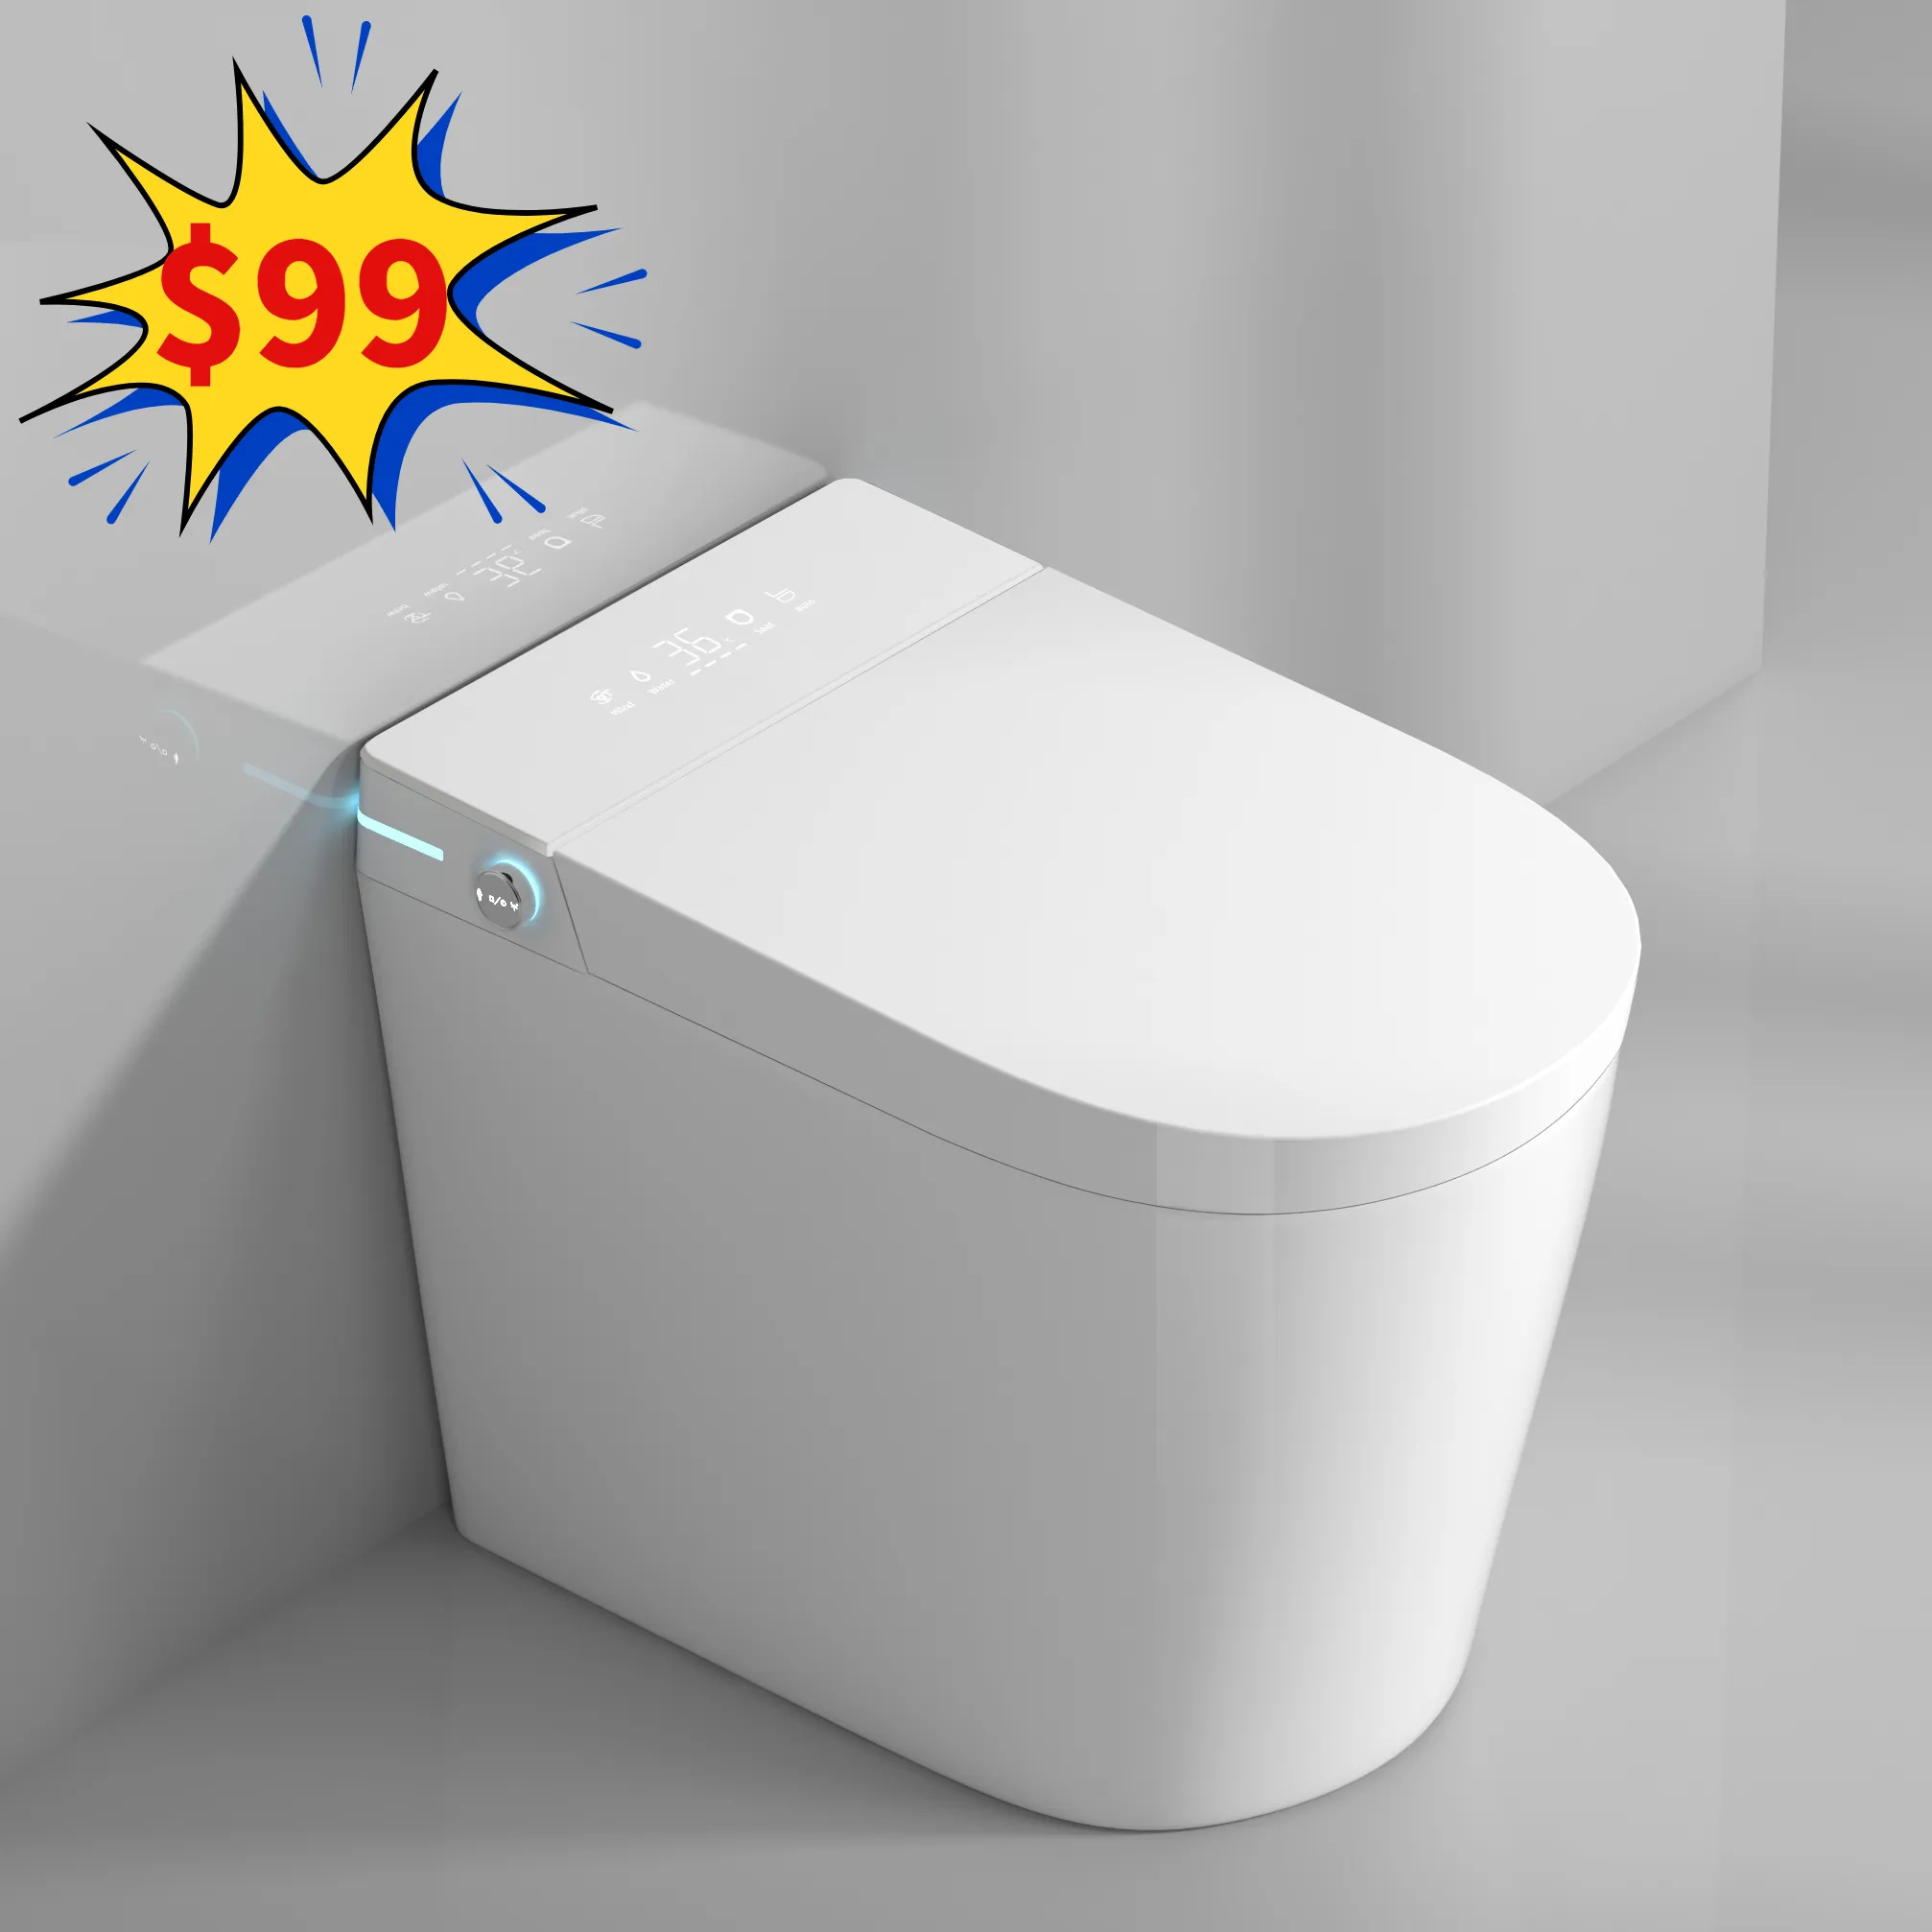 Venta superior WC inteligente Ahorre espacio Tamaño pequeño Artículos sanitarios Armario de agua Inodoro automático Baño Inodoro inteligente de cerámica